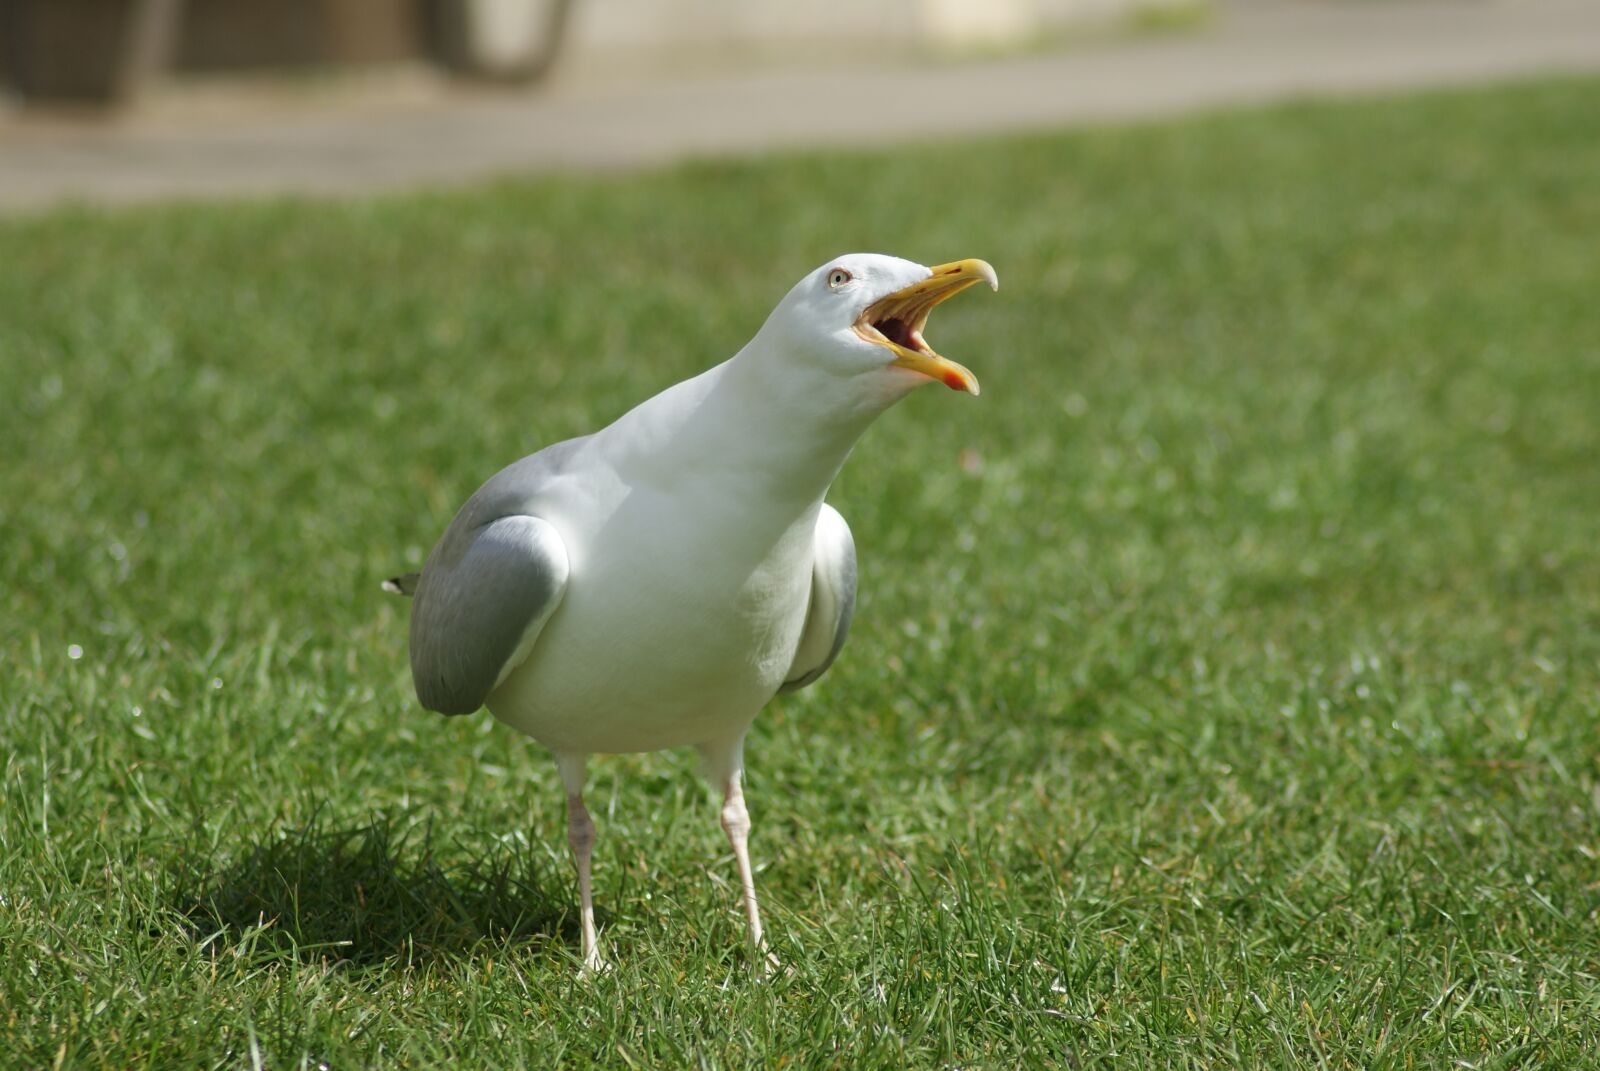 Sony Alpha DSLR-A230 sample photo. Bird, the seagull, animal photography